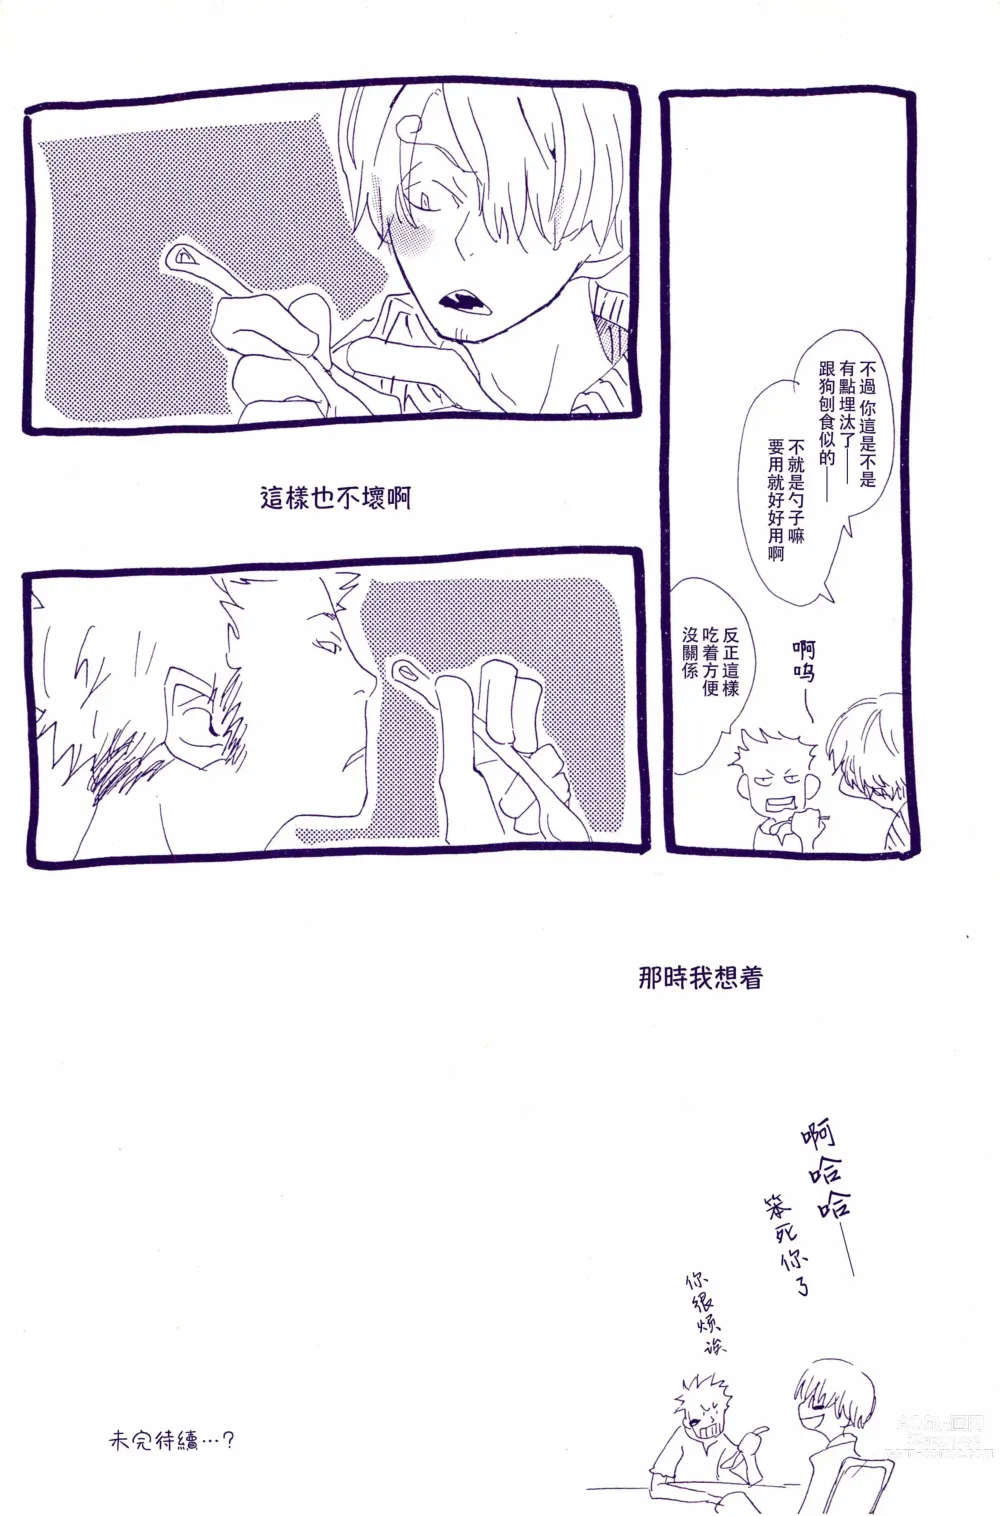 Page 7 of doujinshi 在暴风雨的夜晚 1